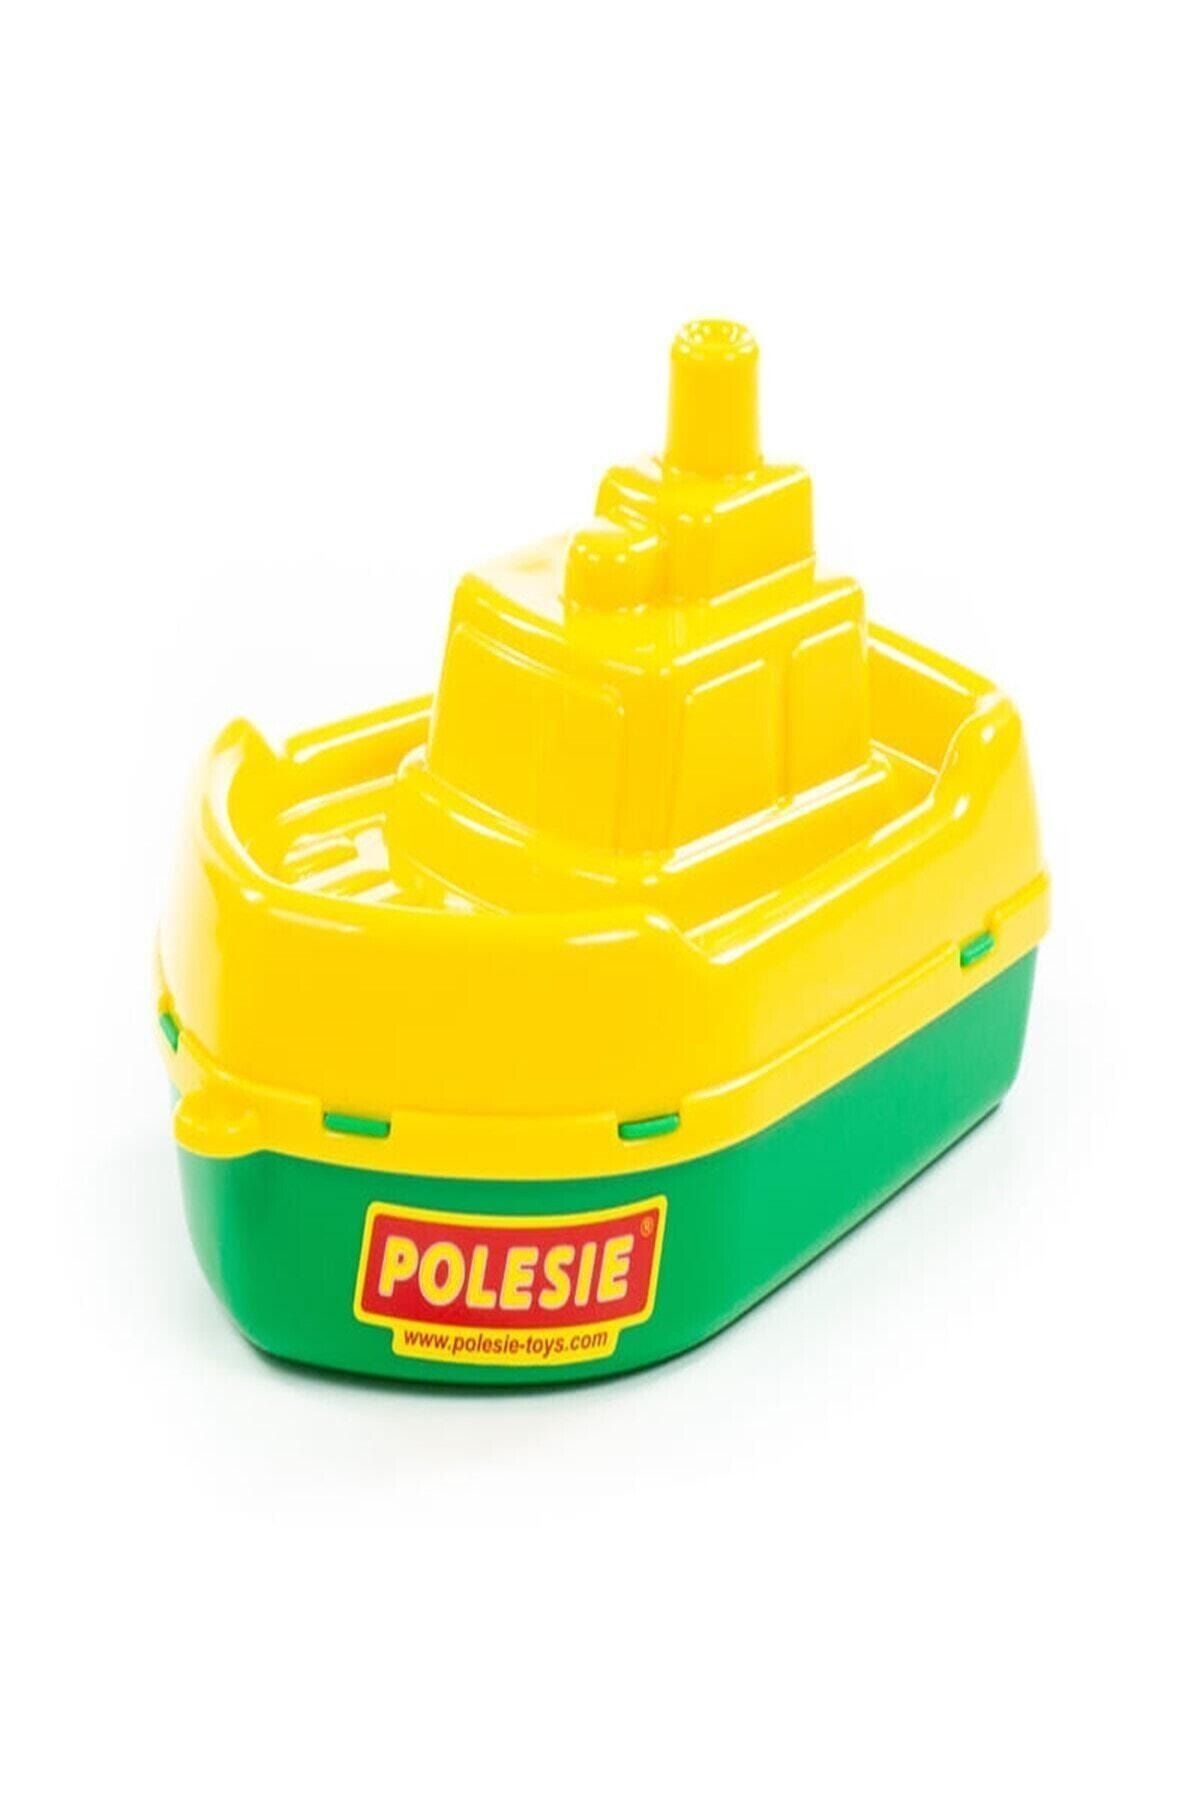 Polesie Marka: Buksir Gemi Oyuncak Kategori: Spor Oyuncakları